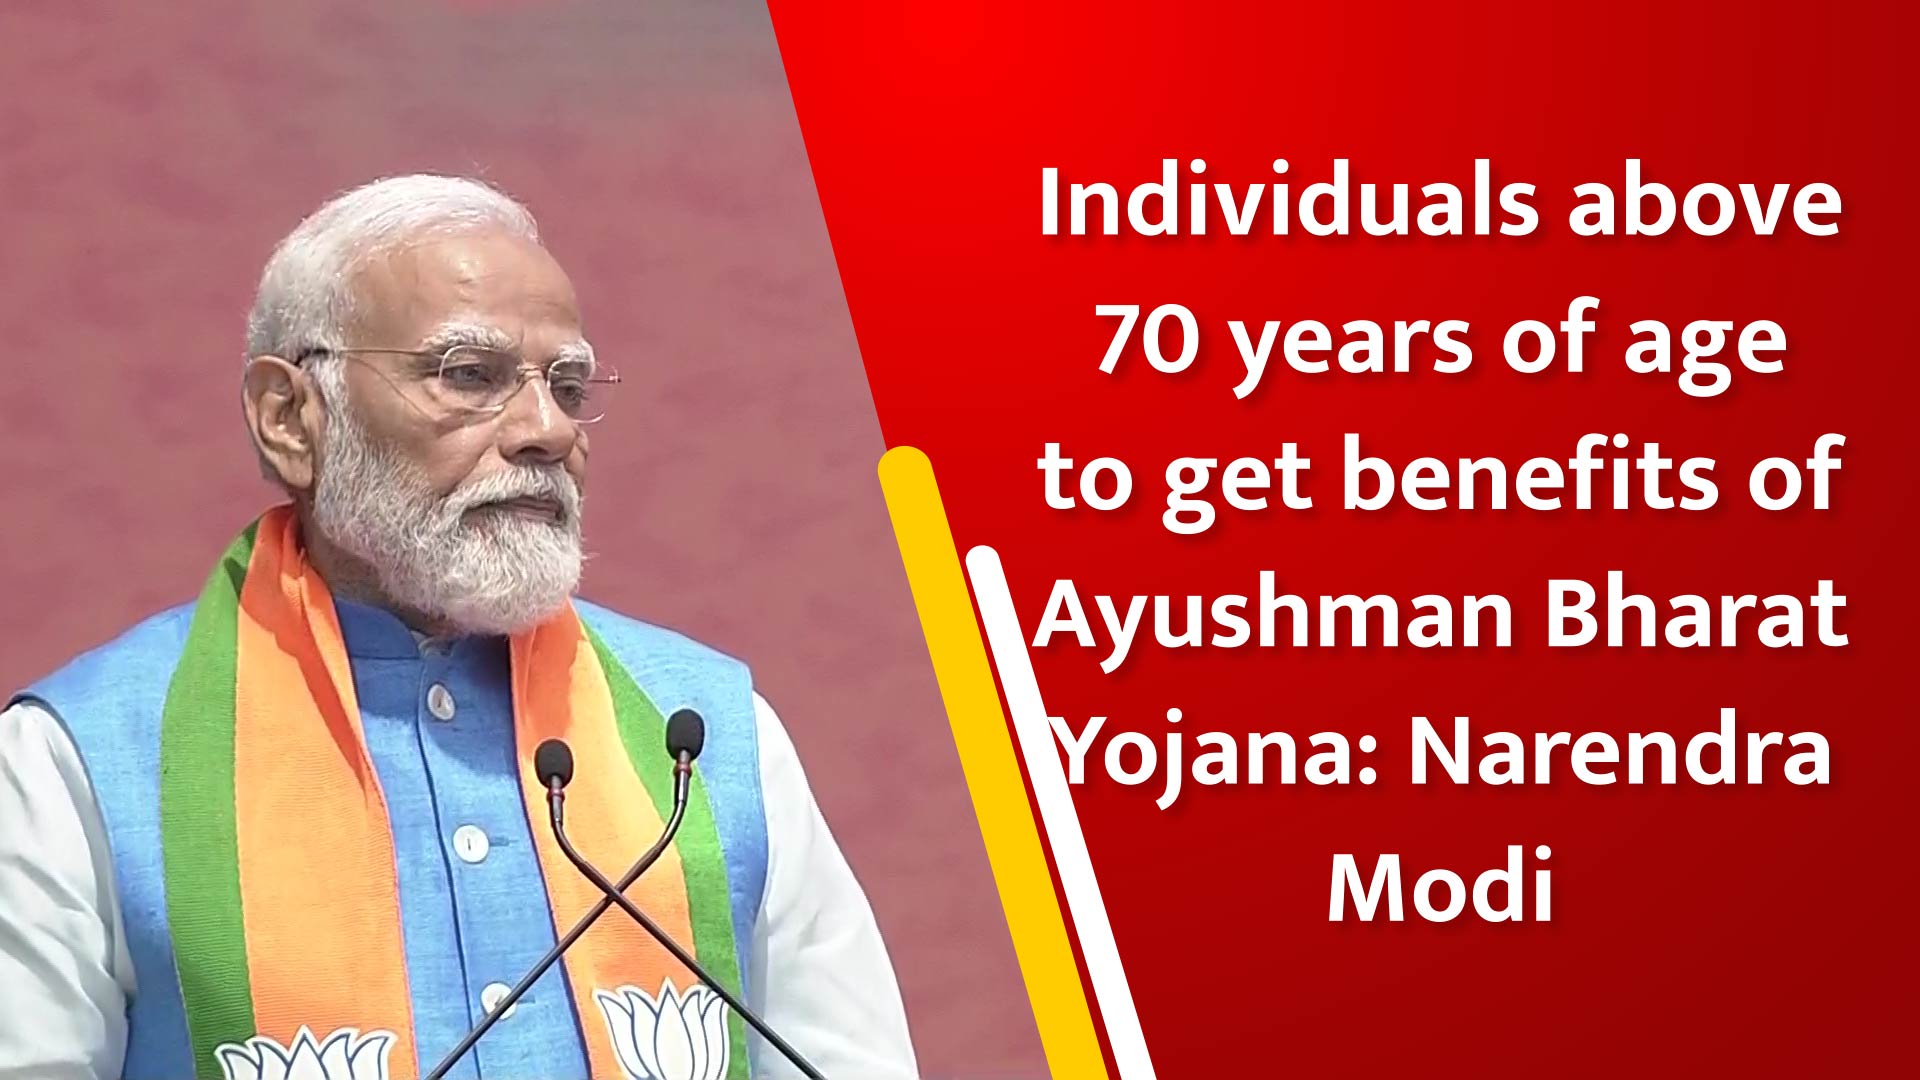 Individuals above 70 years of age to get benefits of Ayushman Bharat Yojana: PM Narendra Modi